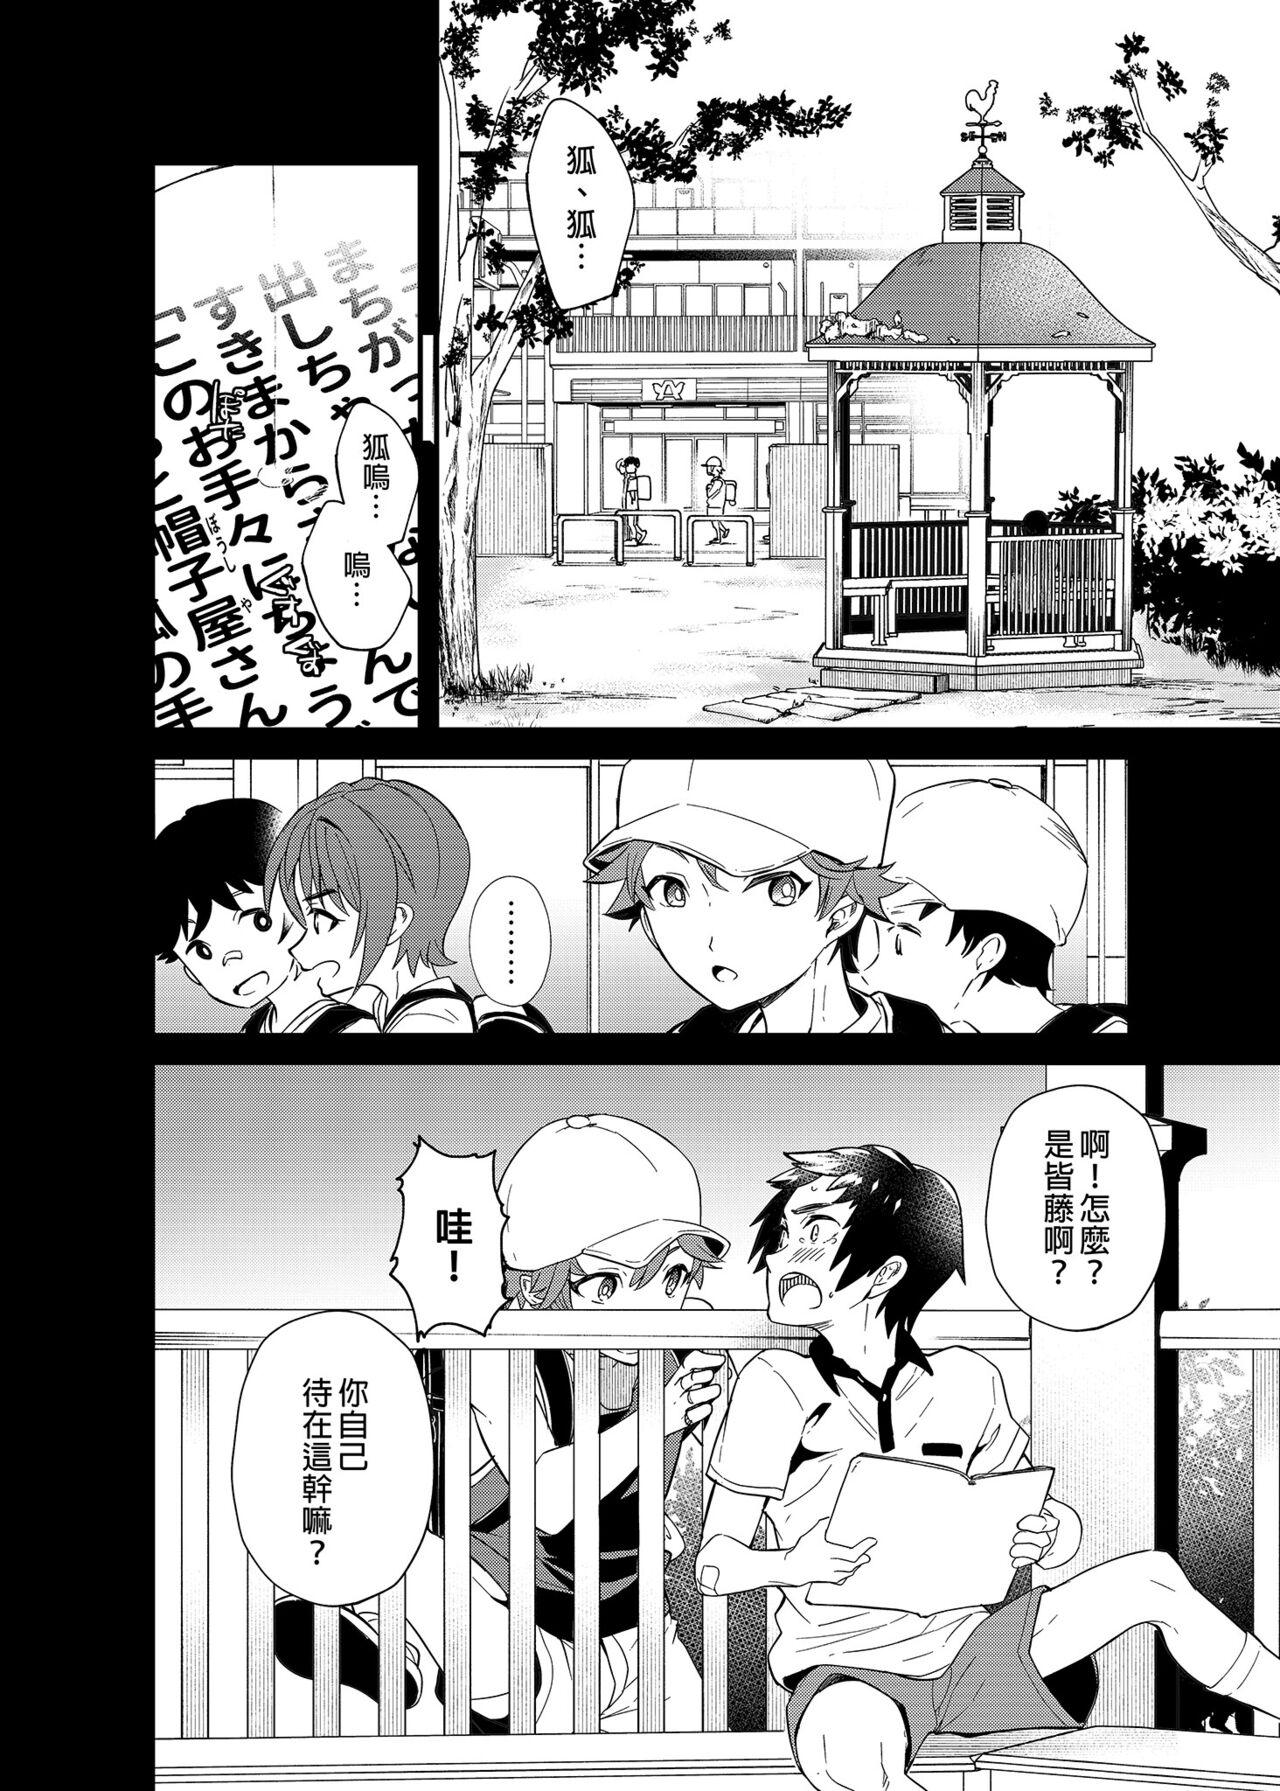 Gozada Kiritsu,ki o tsuke, rei! | 起立、注意、敬禮! - Original And - Page 9